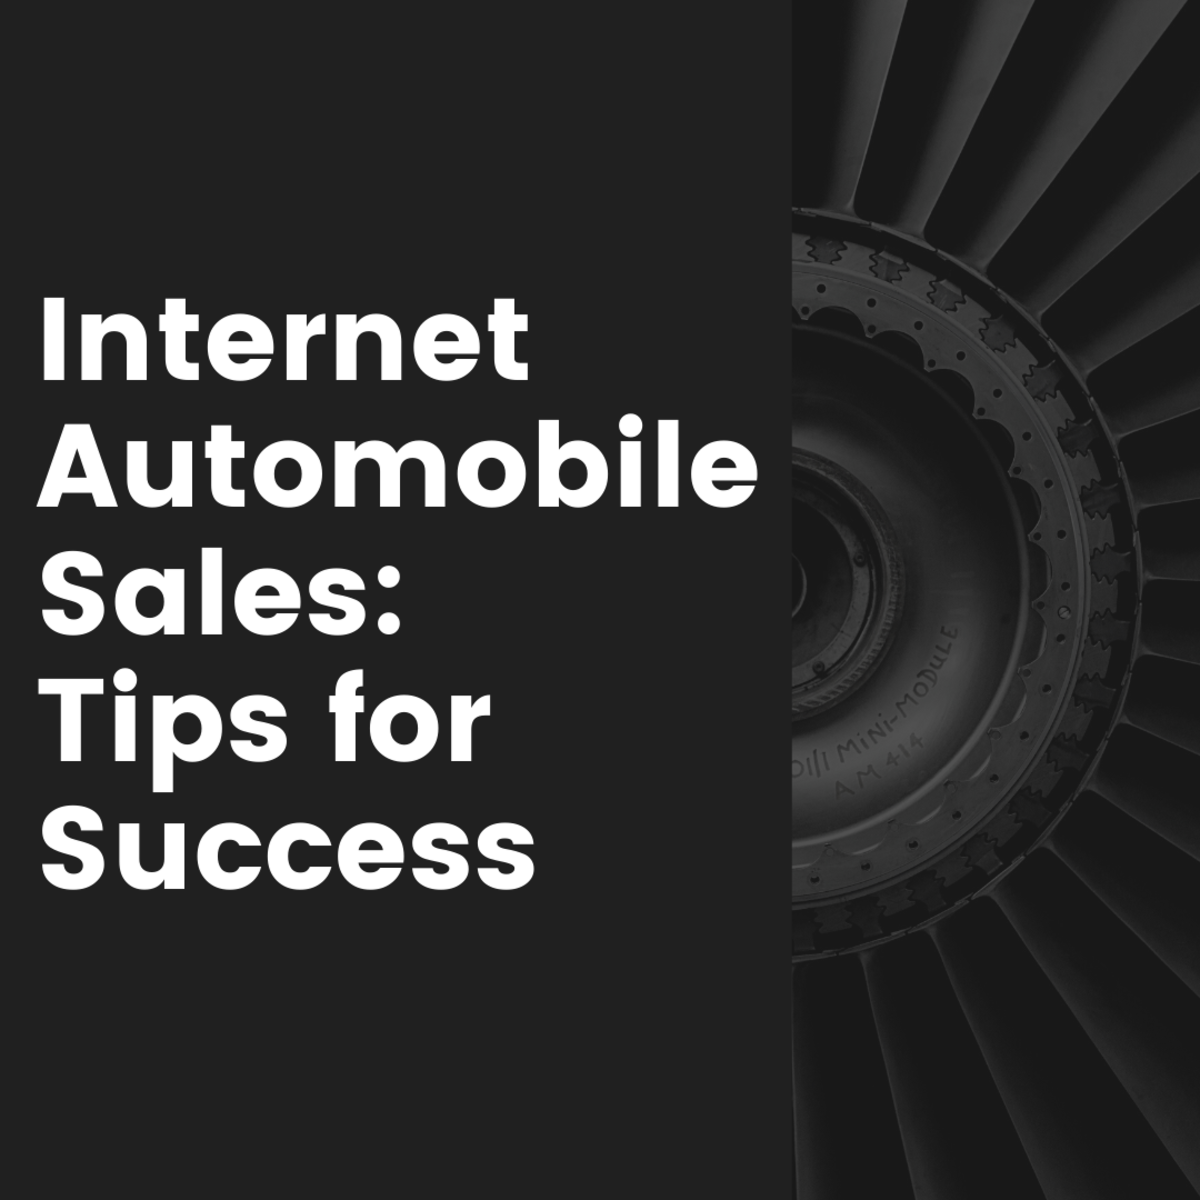 从销售专业人士那里获得一些关于处理汽车销售网络线索的建议。